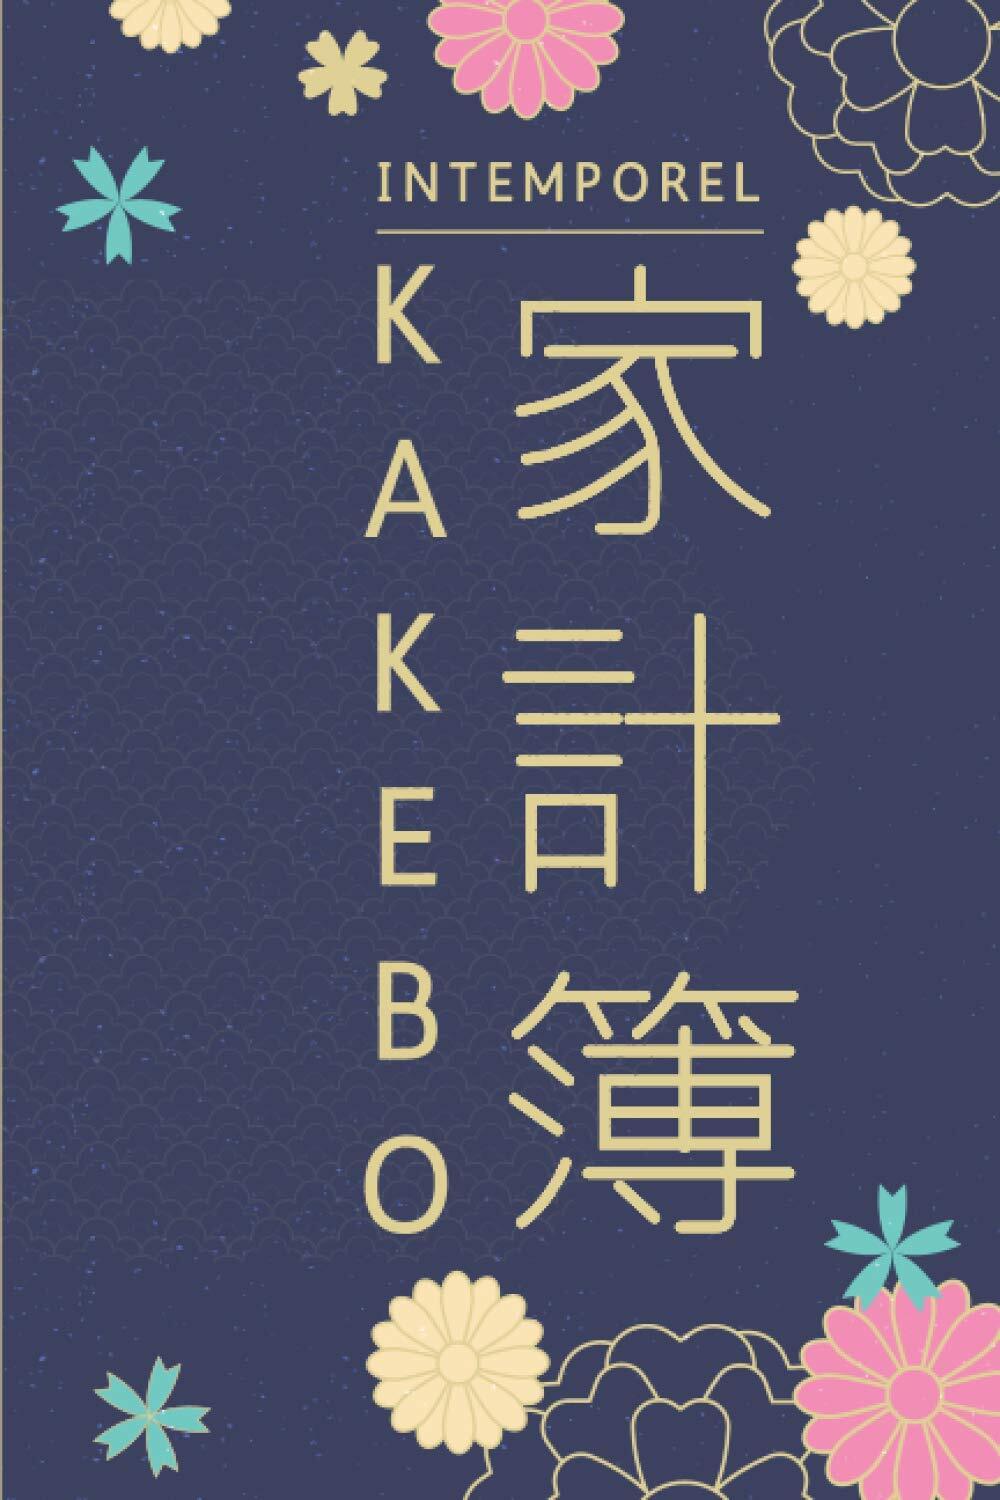 Le Kakebo : une méthode simple pour faire ses comptes